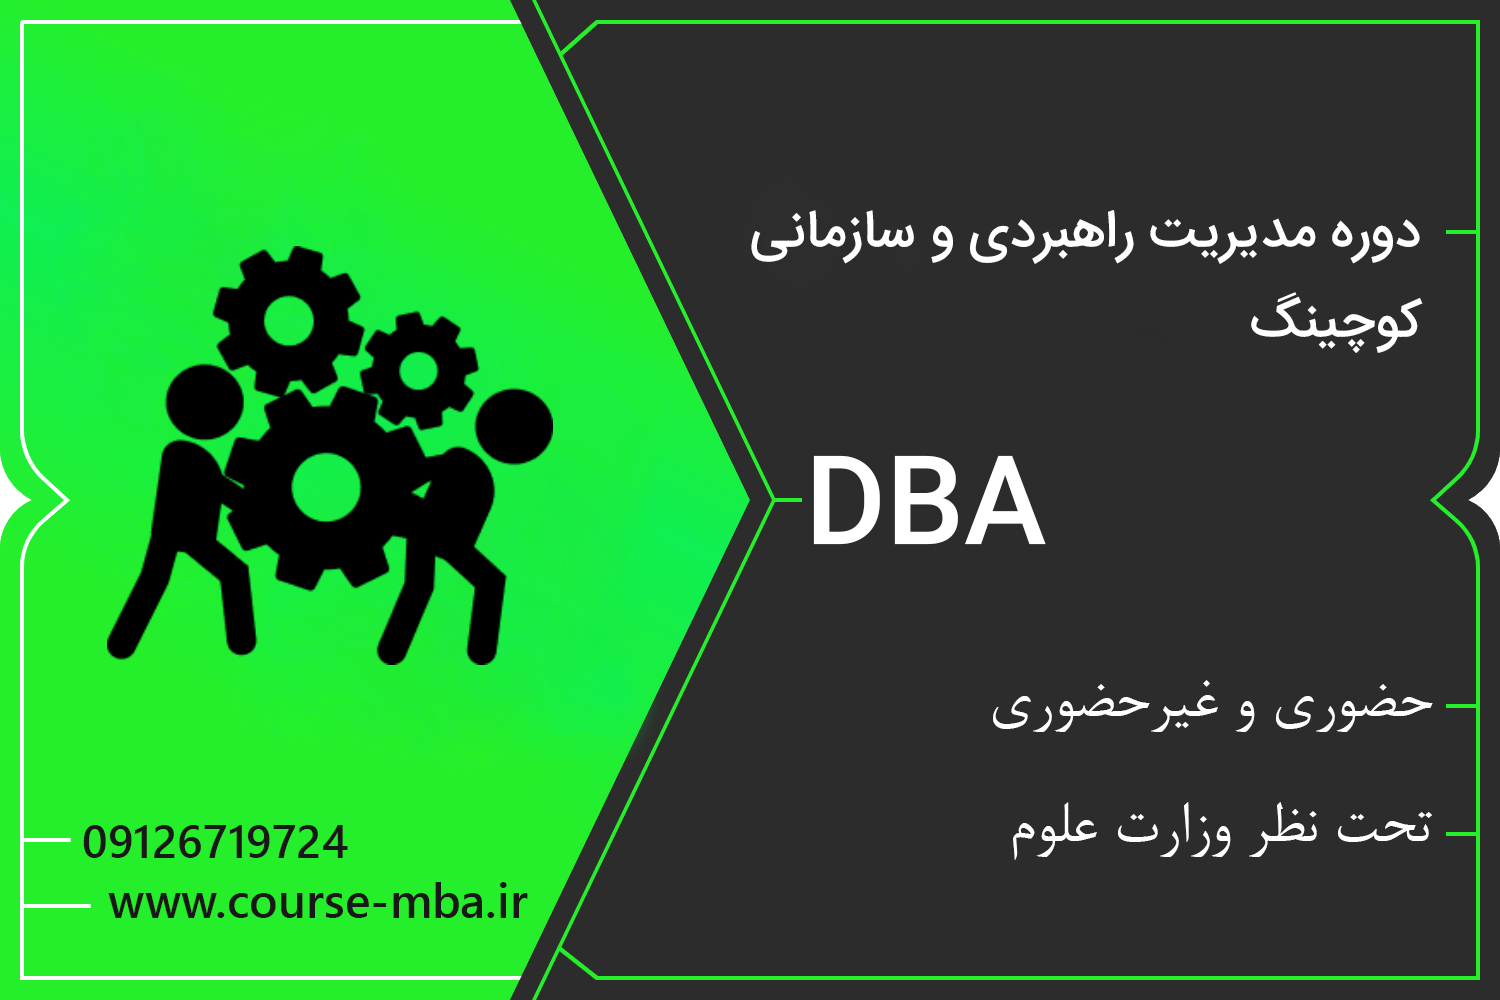 دوره DBA مدیریت کوچینگ | مدرک DBA مدیریت کوچینگ